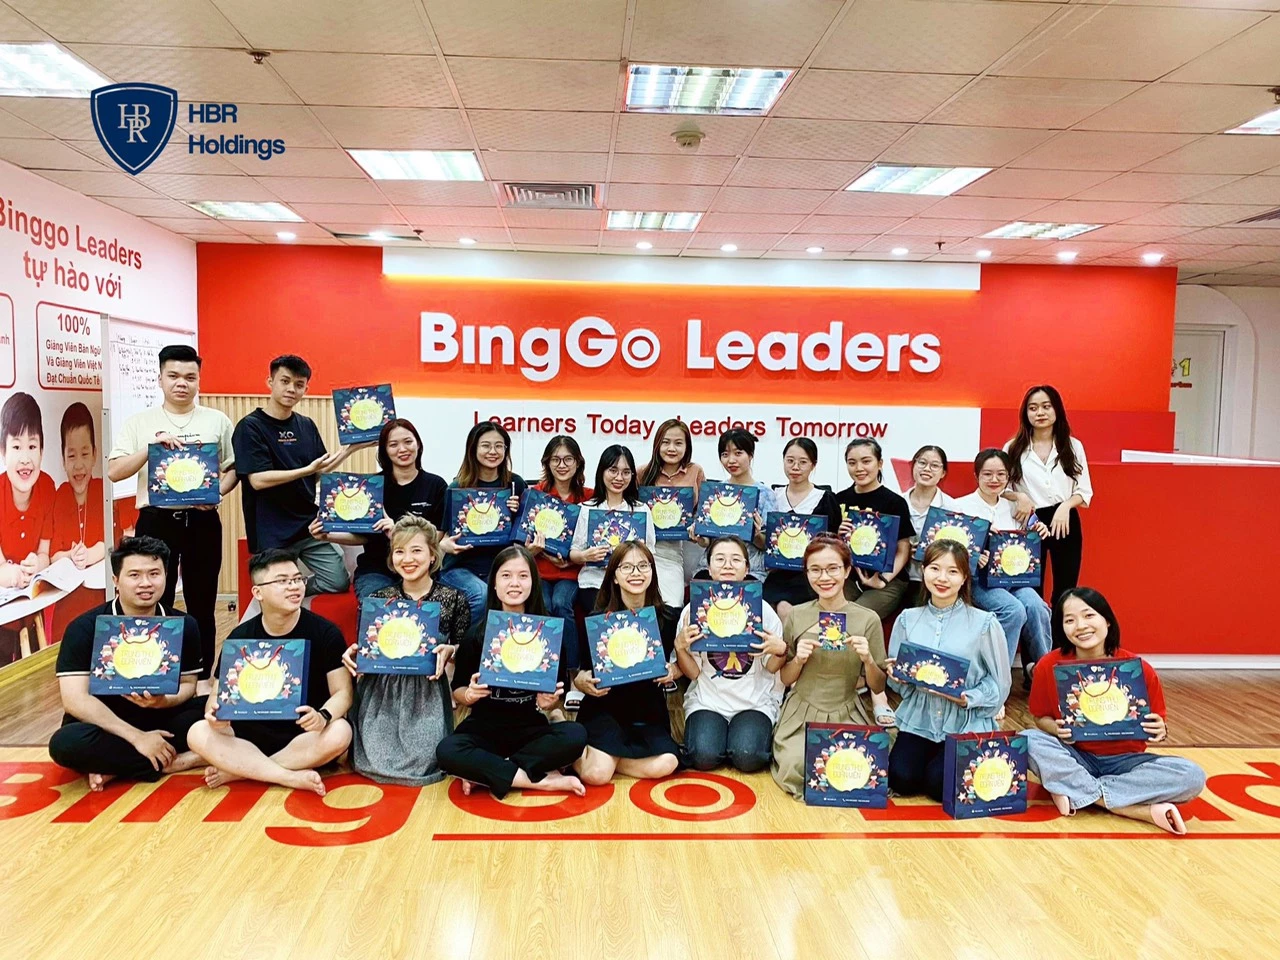 Tiếp tục ghé thăm BingGo Leaders cơ sở 139 Cầu Giấy